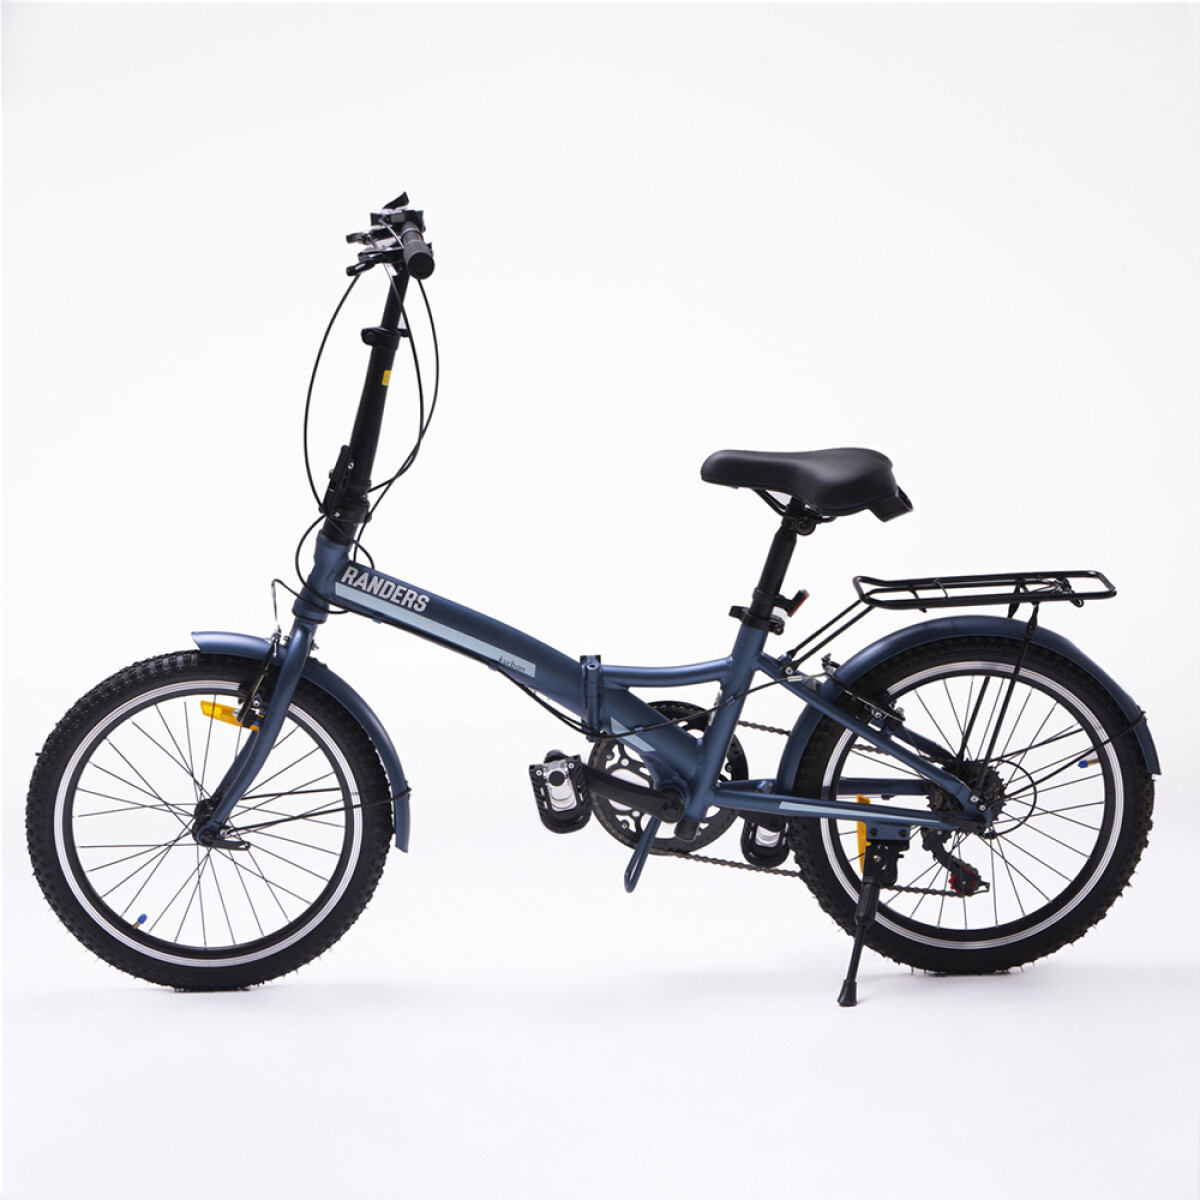 Bicicleta Plegable cuadro aluminio rod 20 y cambios Shimano - Azul 